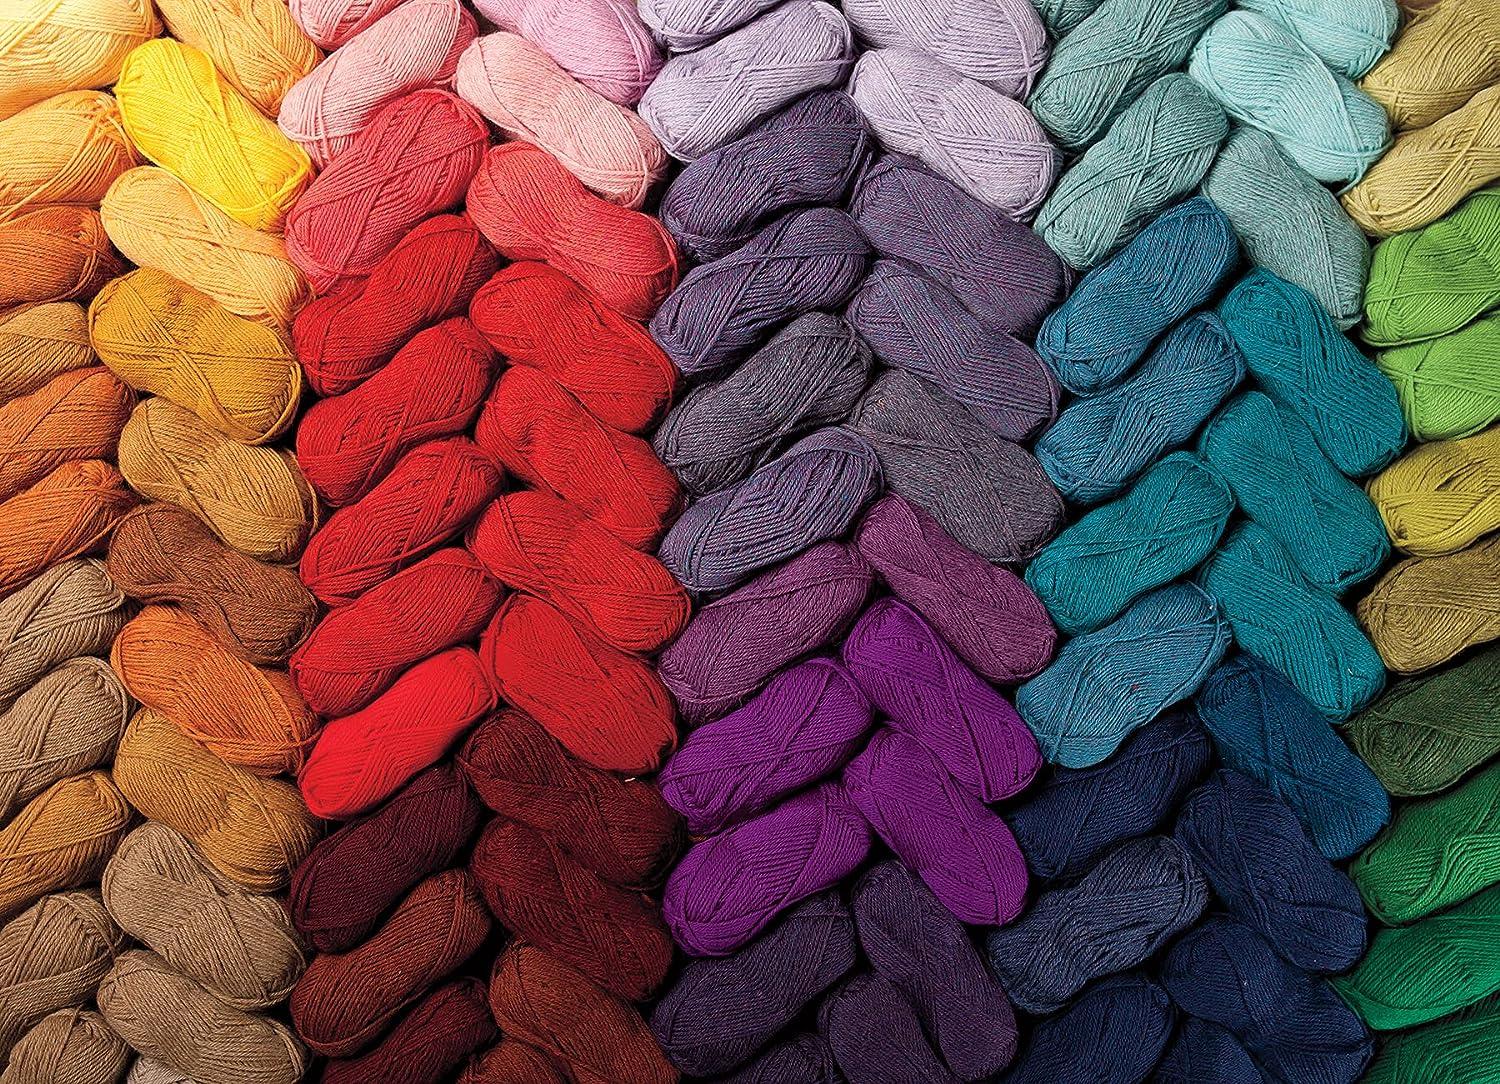 Knit Picks Palette 100% wool yarn, Pool (blue), lot of 2 (231 yds each)